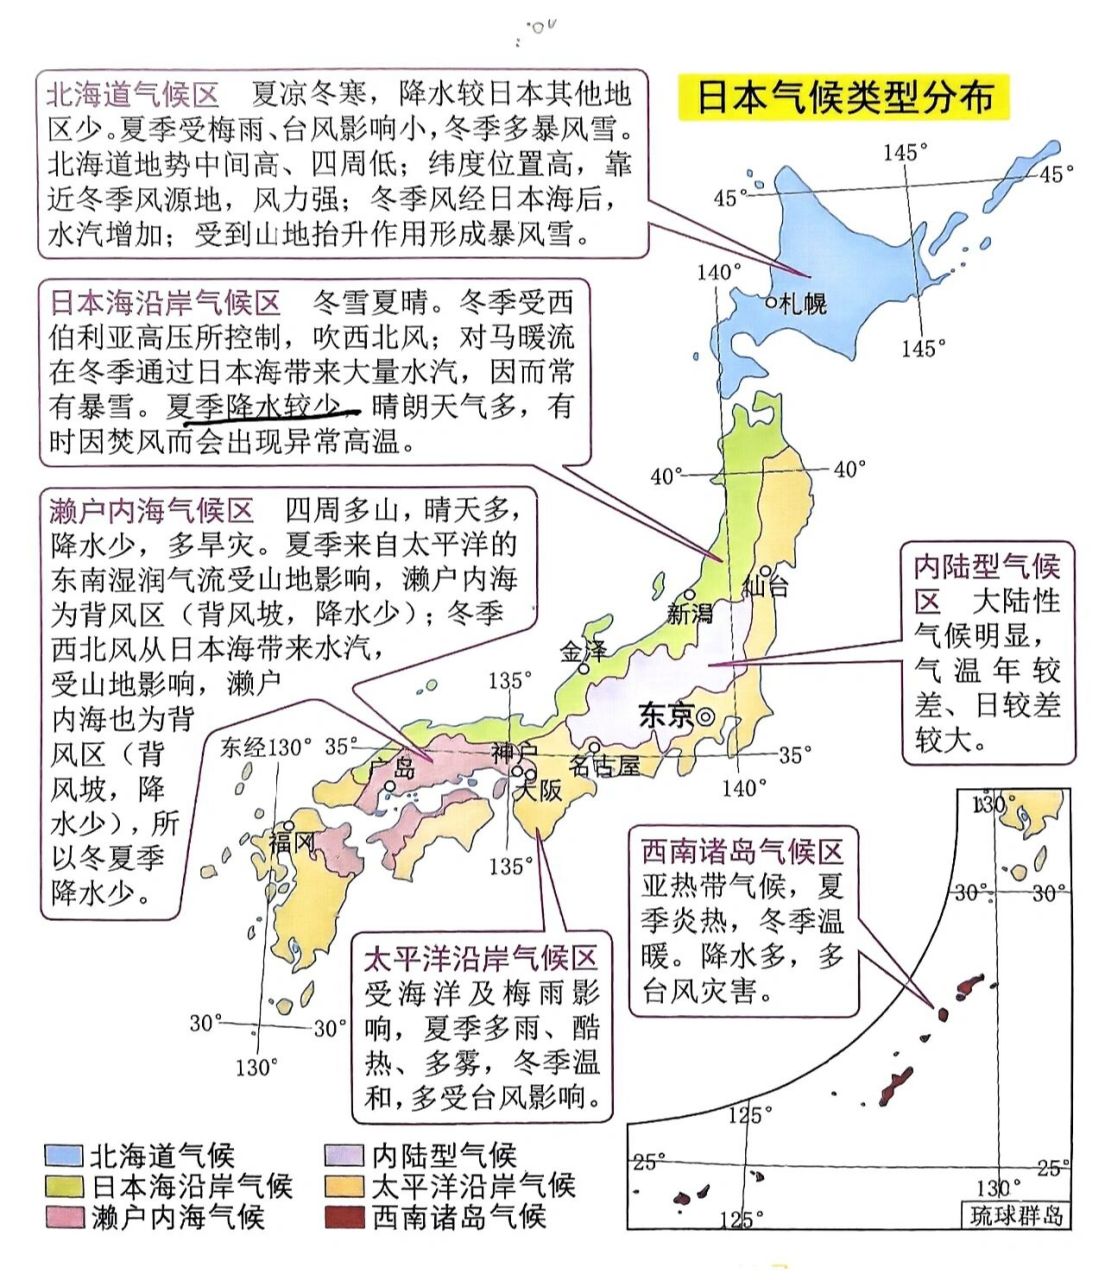 日本气候带分布图图片